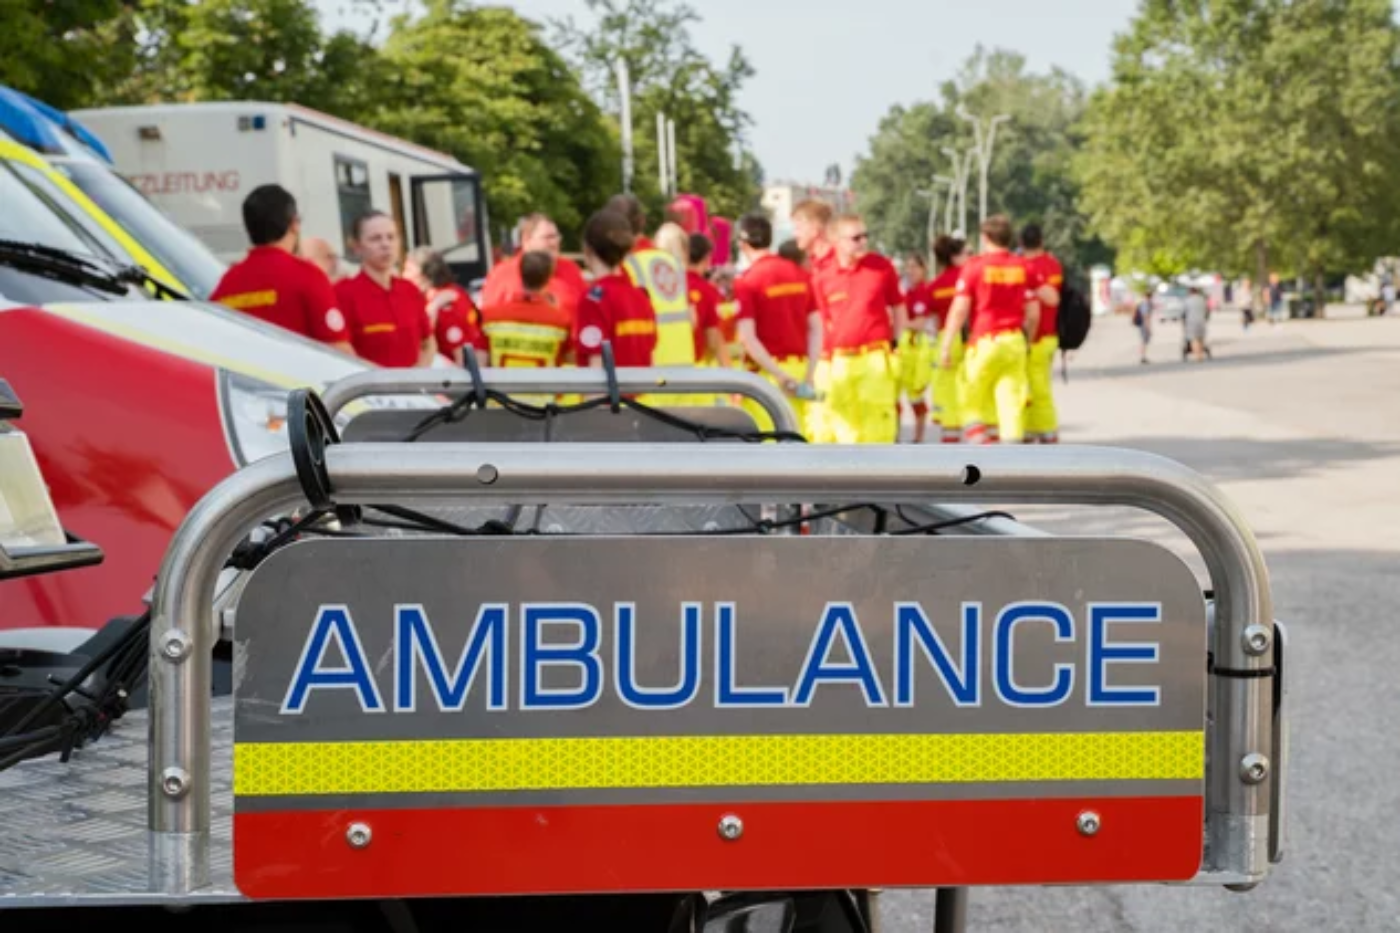 Ein Schild mit Aufdruck "Ambulance" in Großbuchstaben, im Hintergrund sind Zivildiener in Uniform des Samariterbundes Österreichs zu sehen